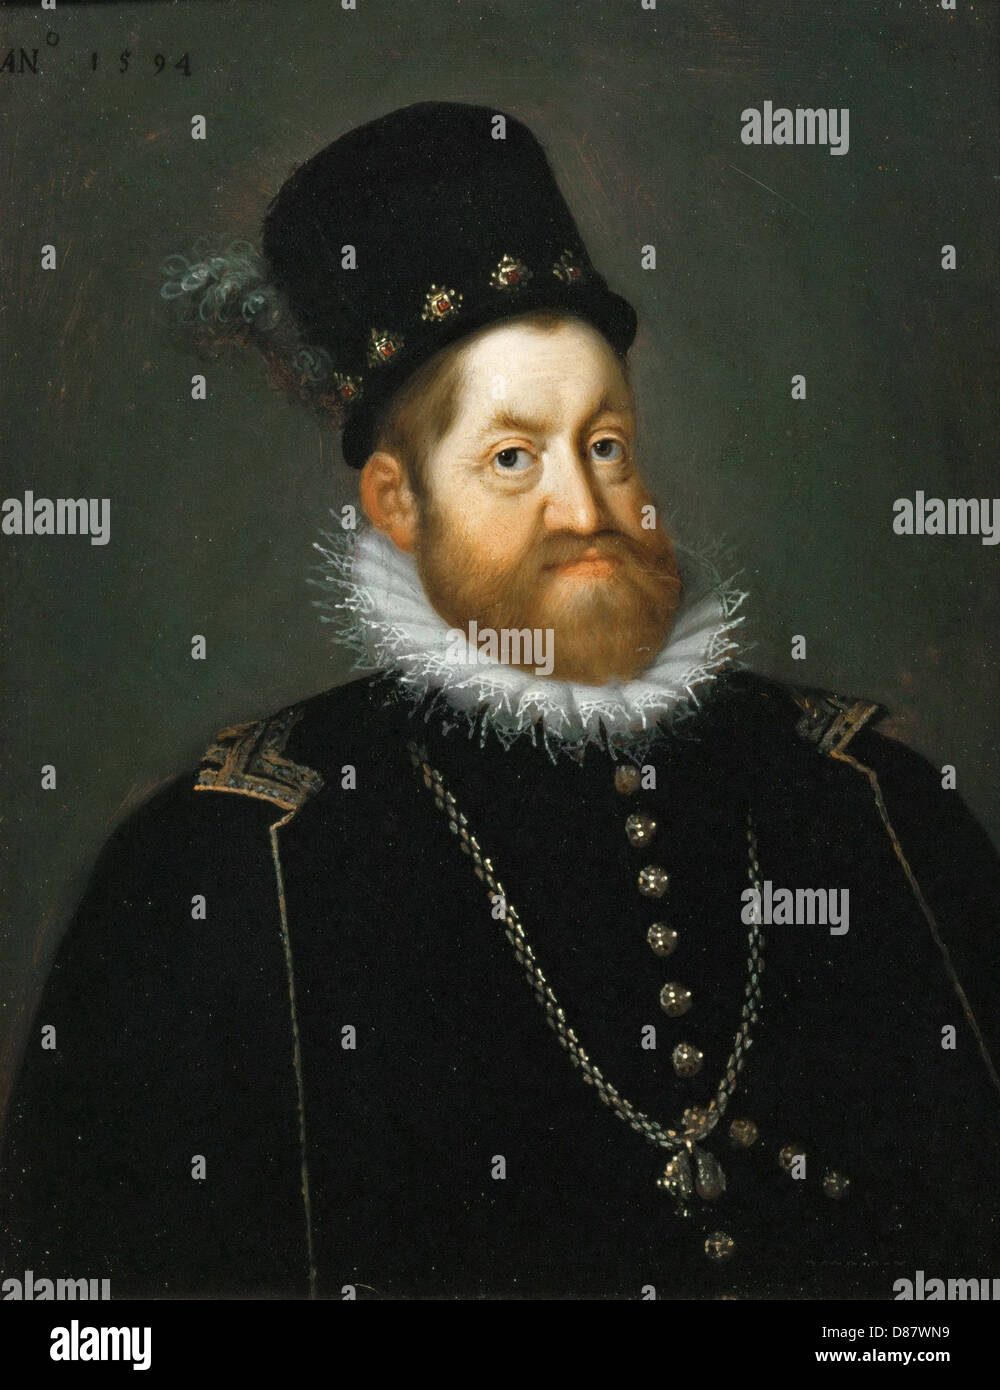 RUDOLF II, Heiliger römischer Kaiser (1552-1612) im Jahre 1594. Auch König von Ungarn und Kroatien, König von Böhmen und Erzherzog von Österreich Stockfoto